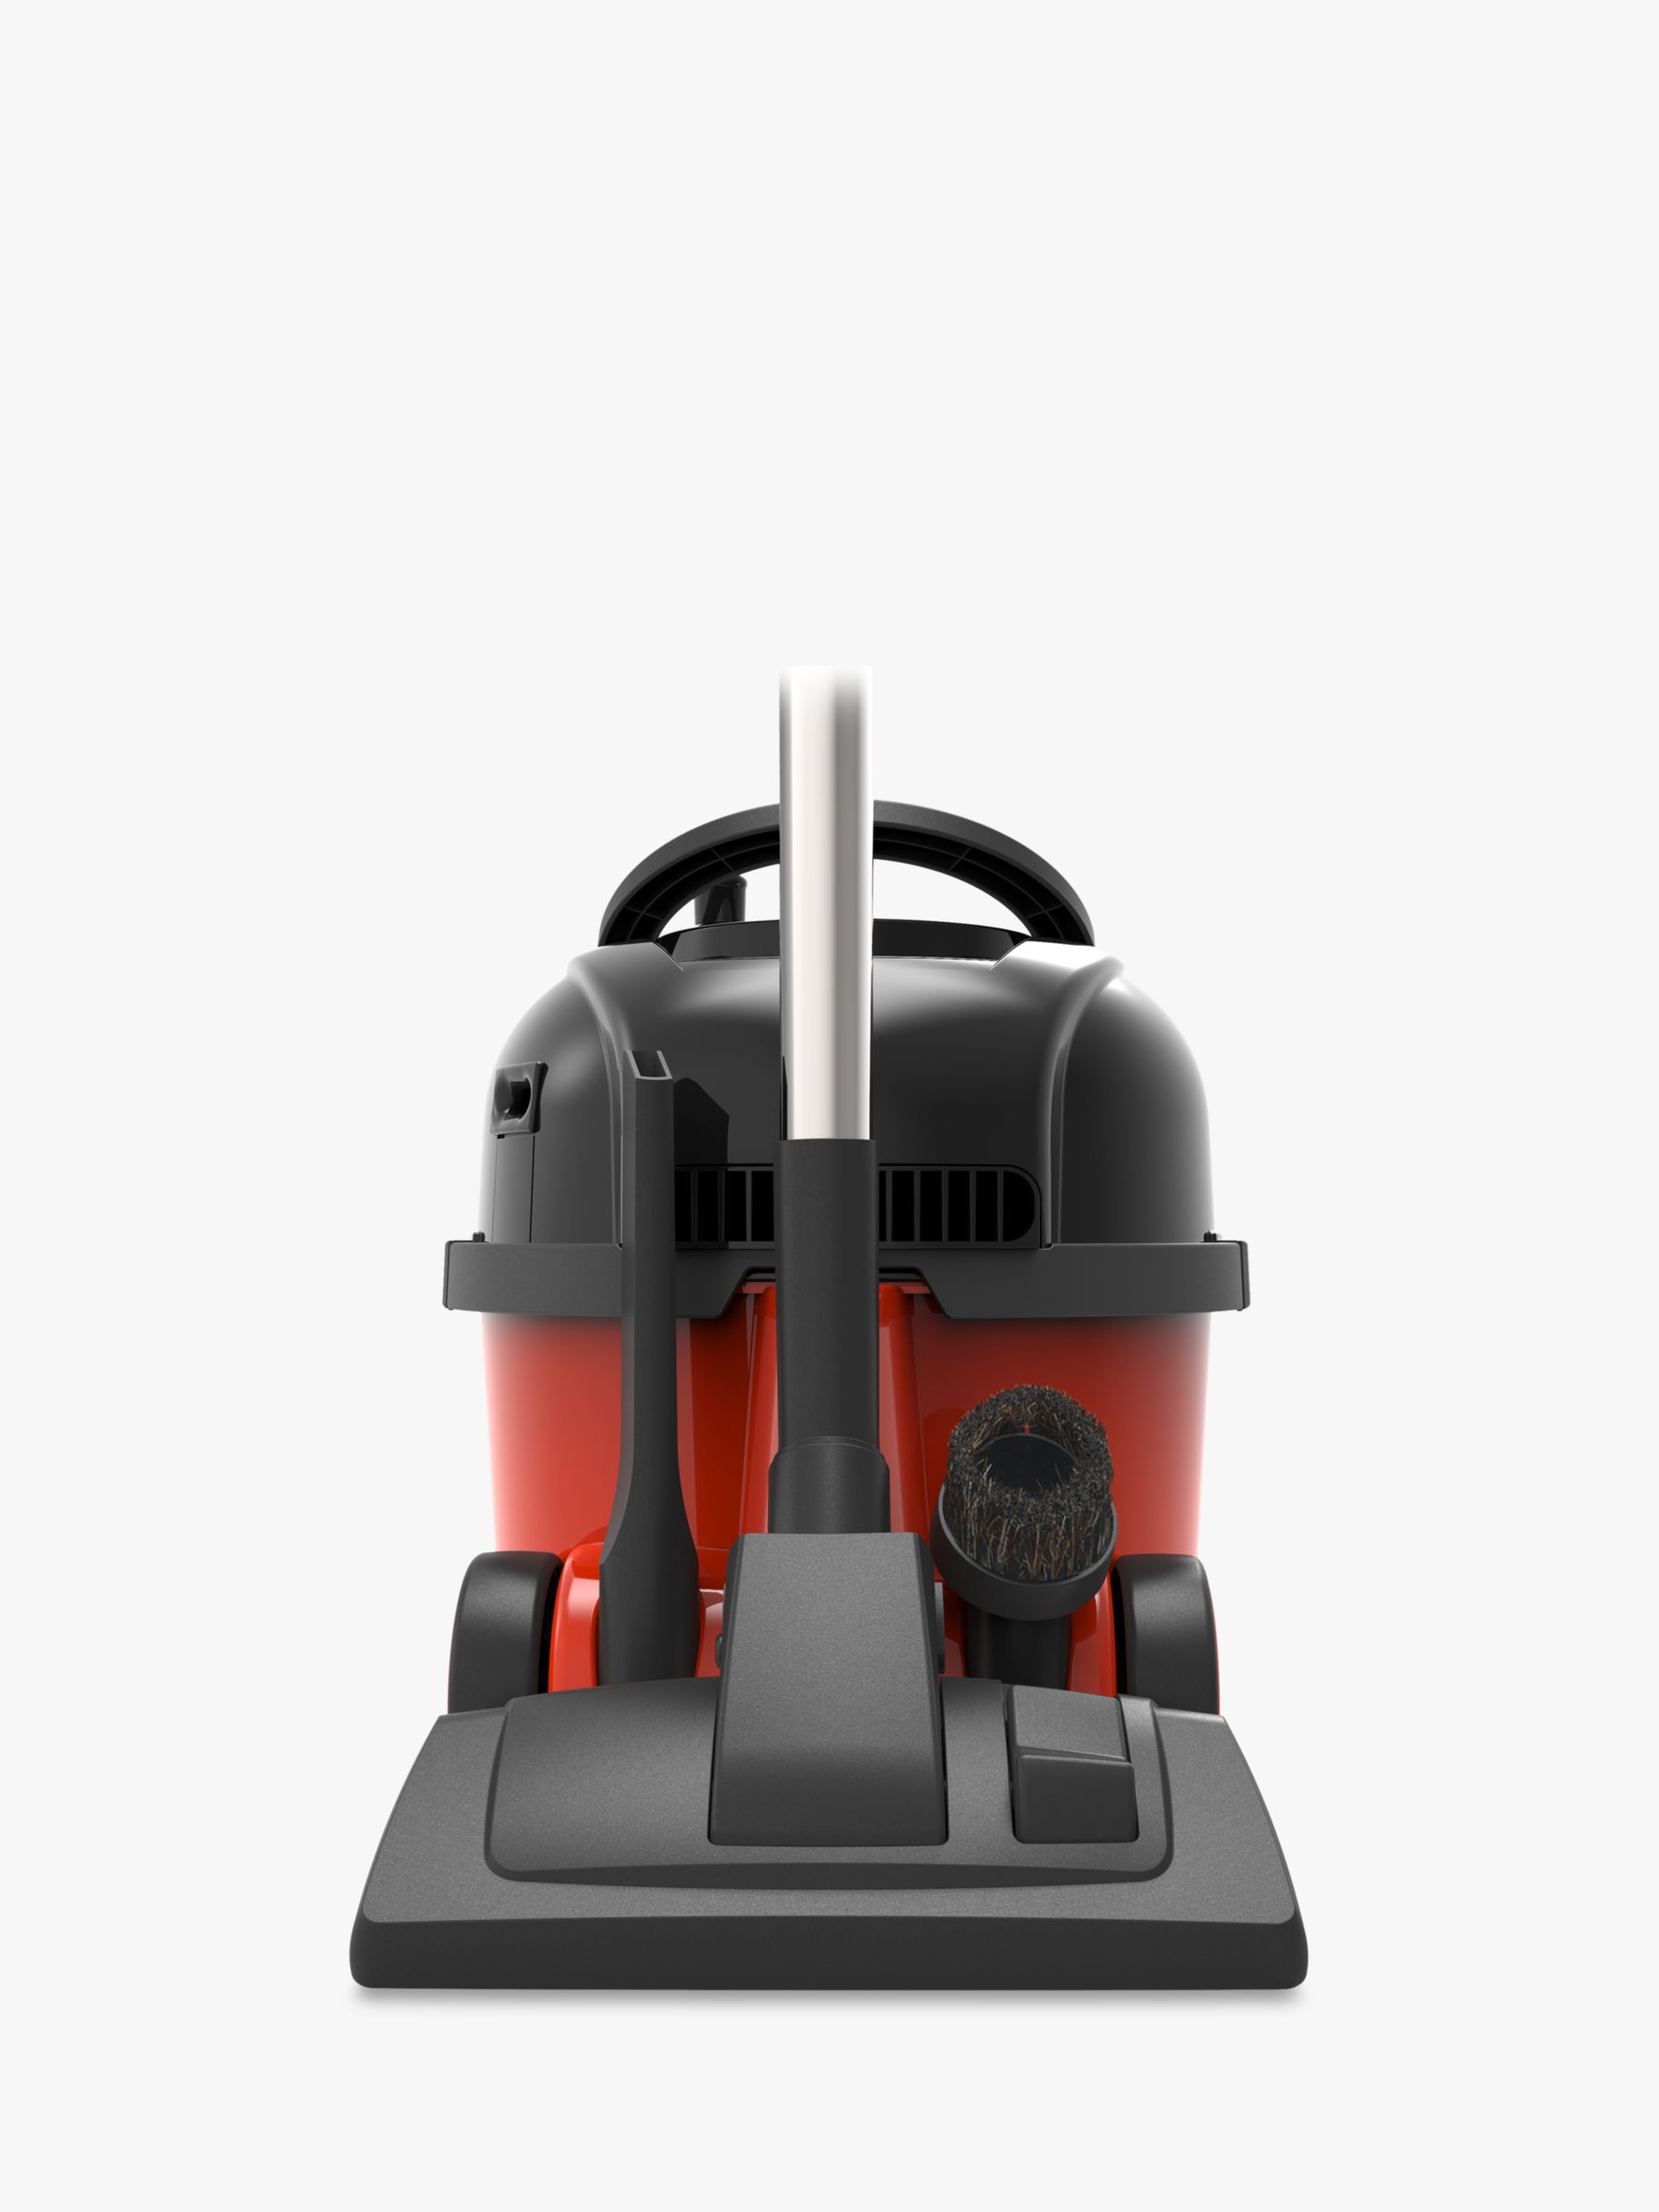 Henry Plus Vacuum Cleaner